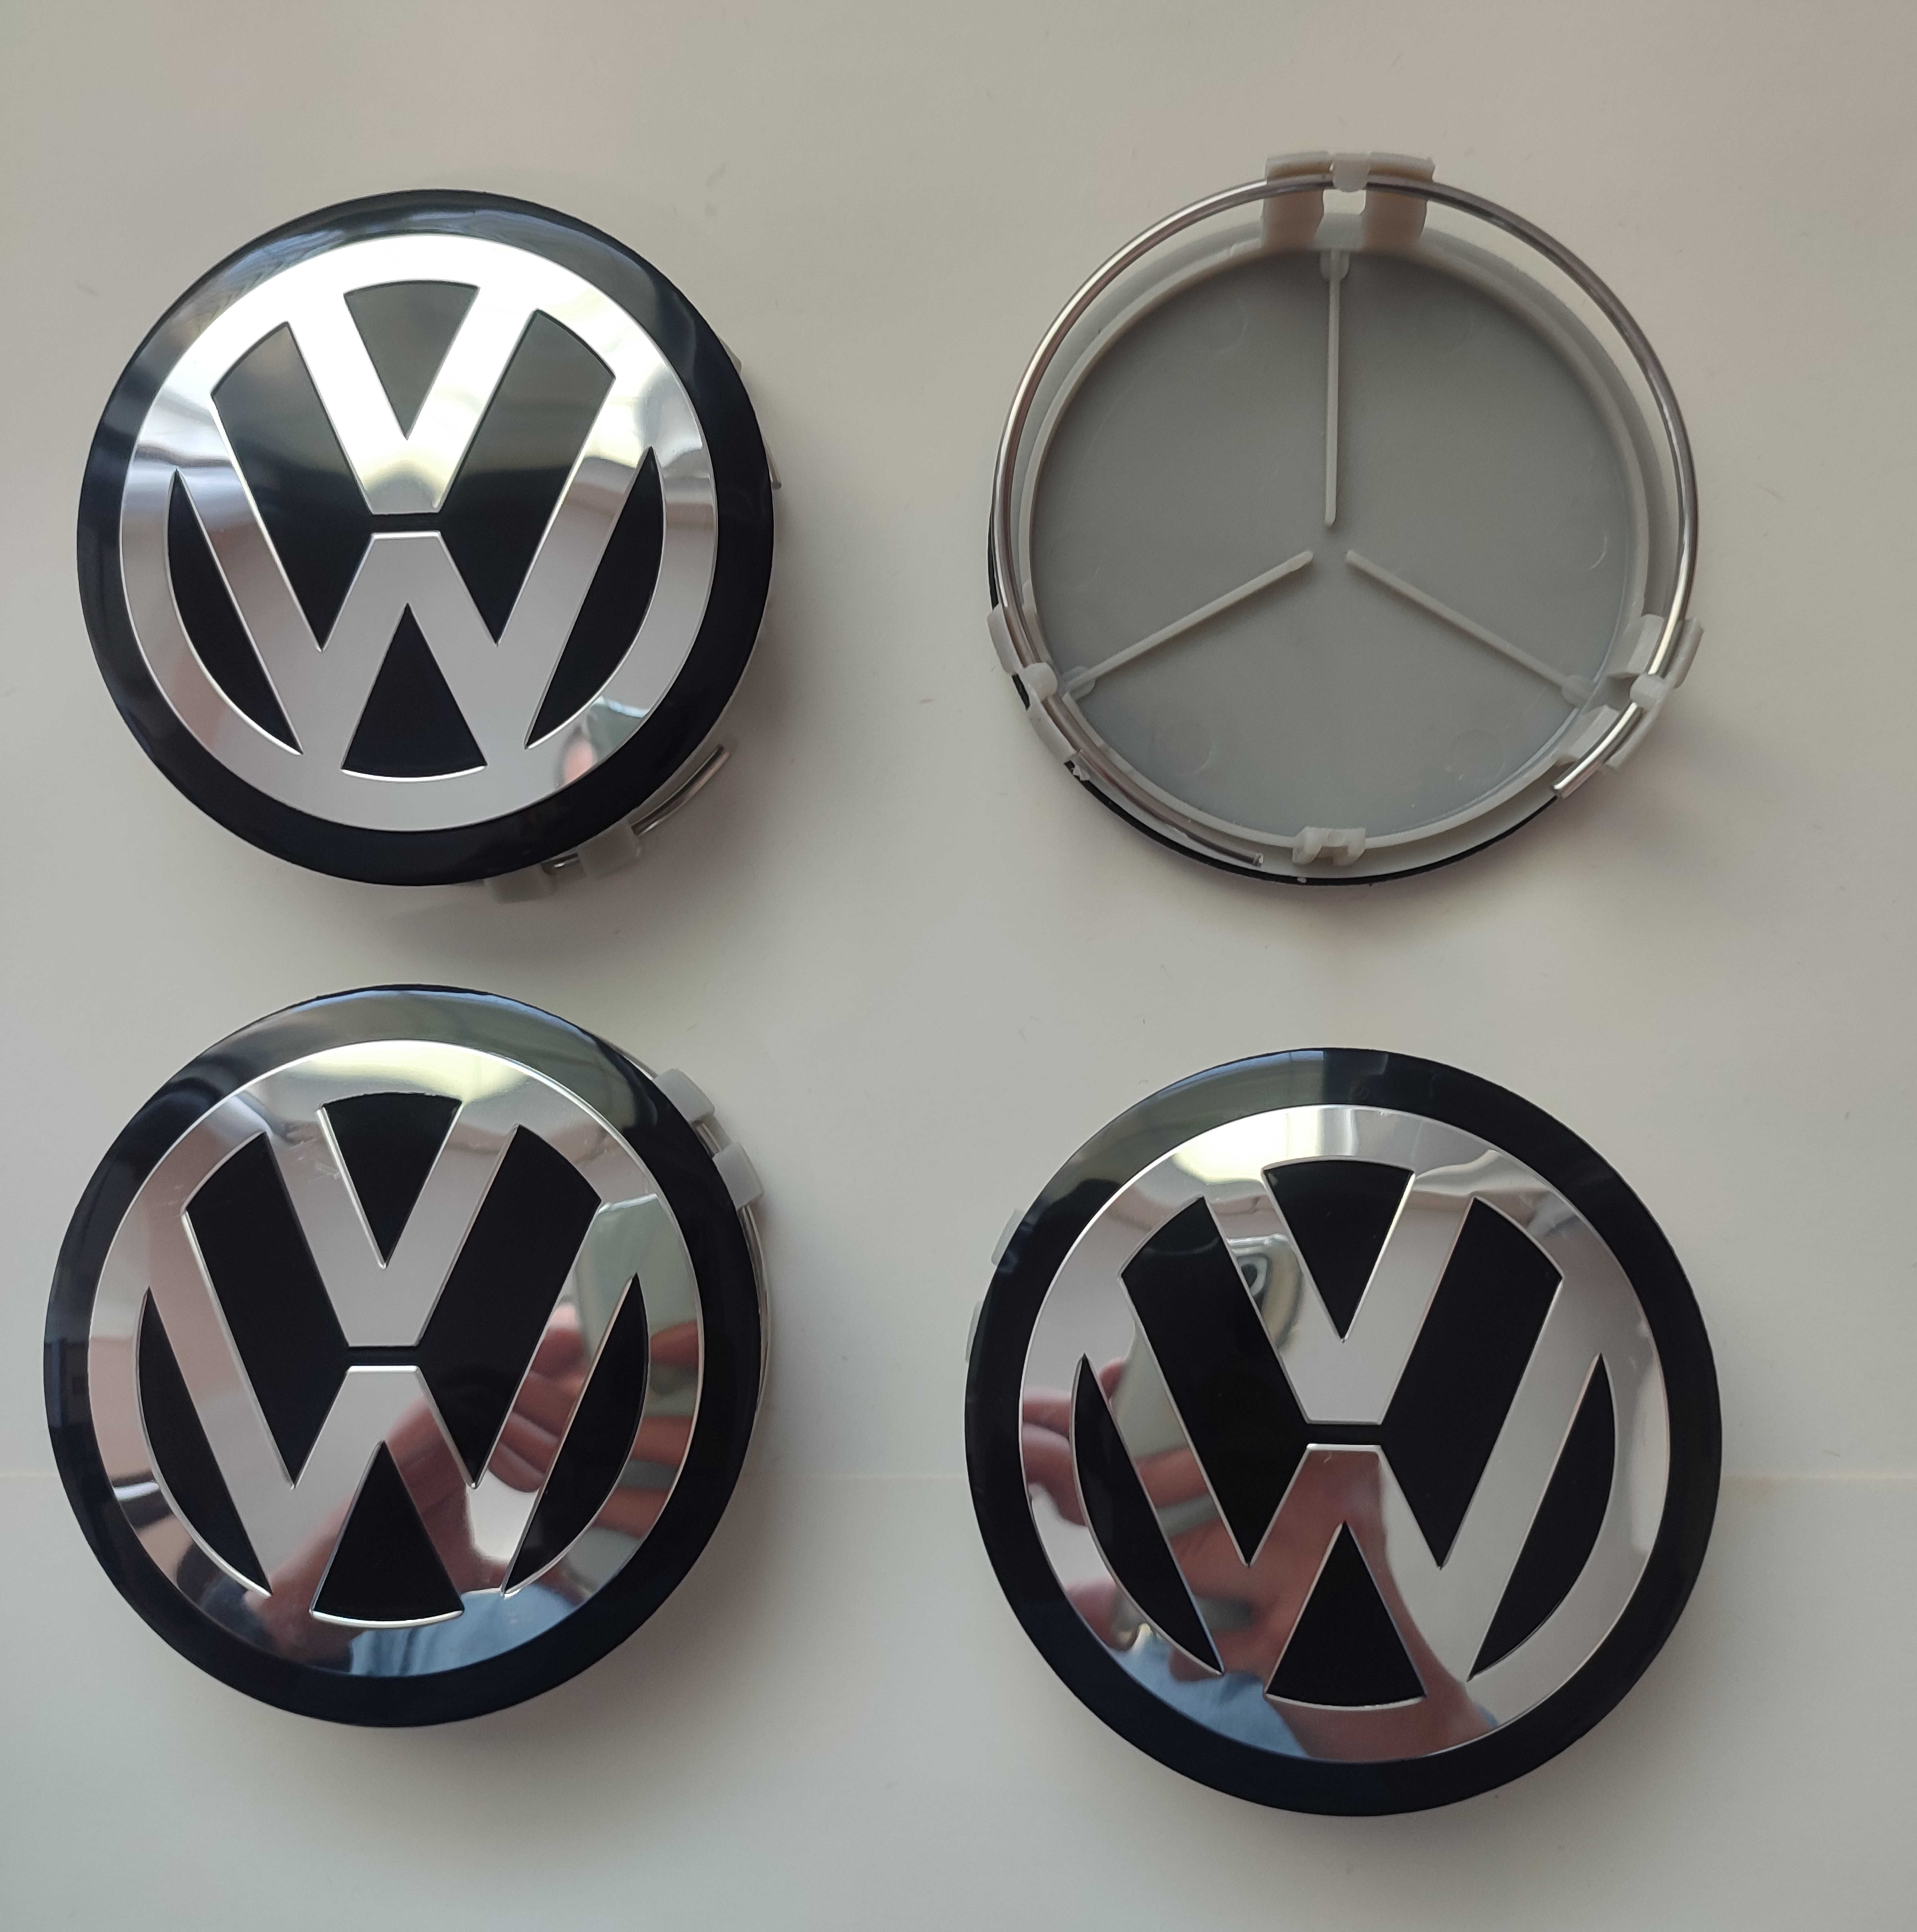 Капачки с лого VW за джанти от мерцедес 75 мм